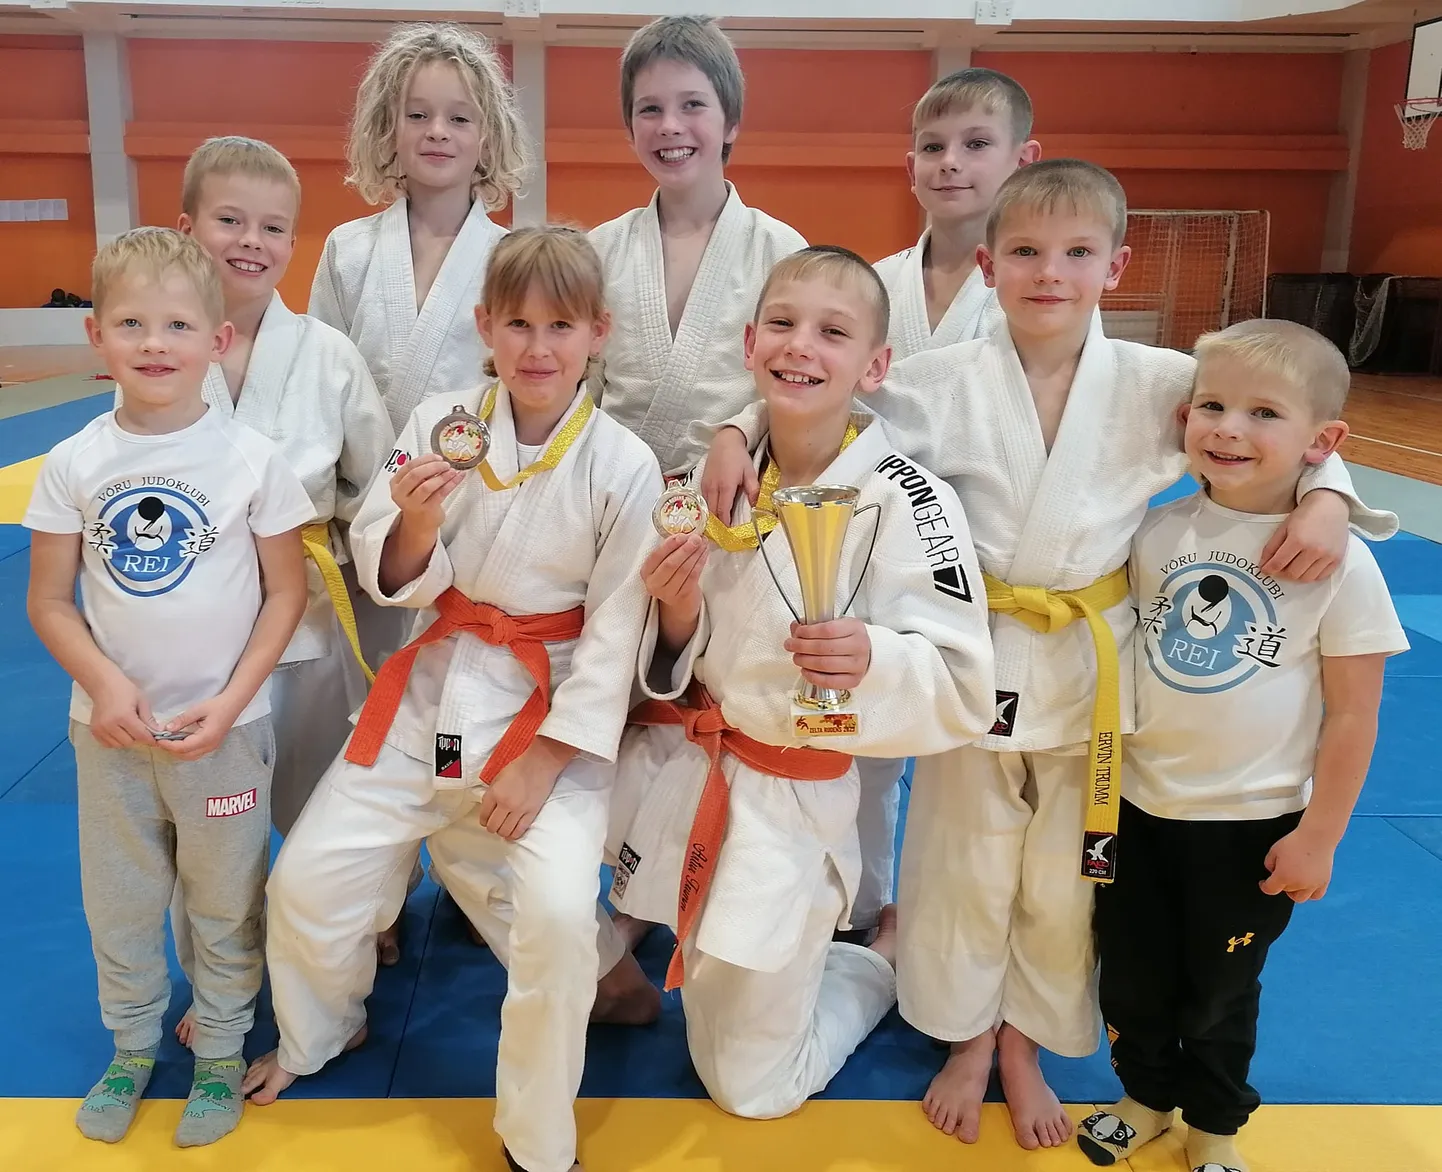 Võru judoklubi REI võistlejad võitsid Lätis noorte judoturniiril kulla, hõbeda ja pronksi.